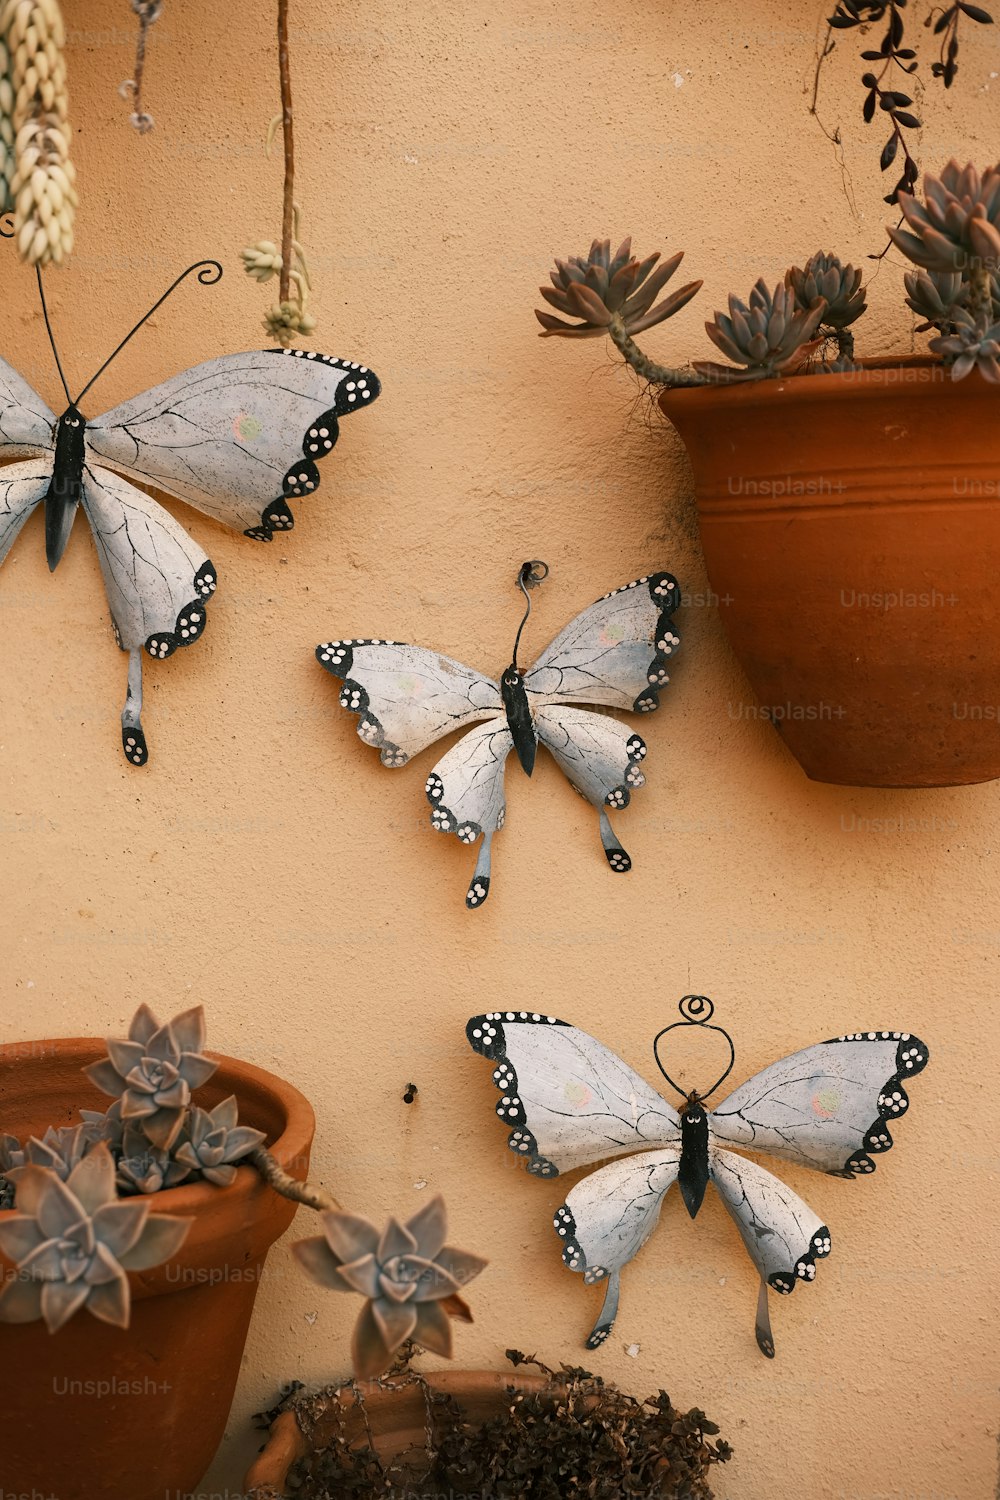 Tre farfalle sono appese a un muro accanto a una pianta in vaso